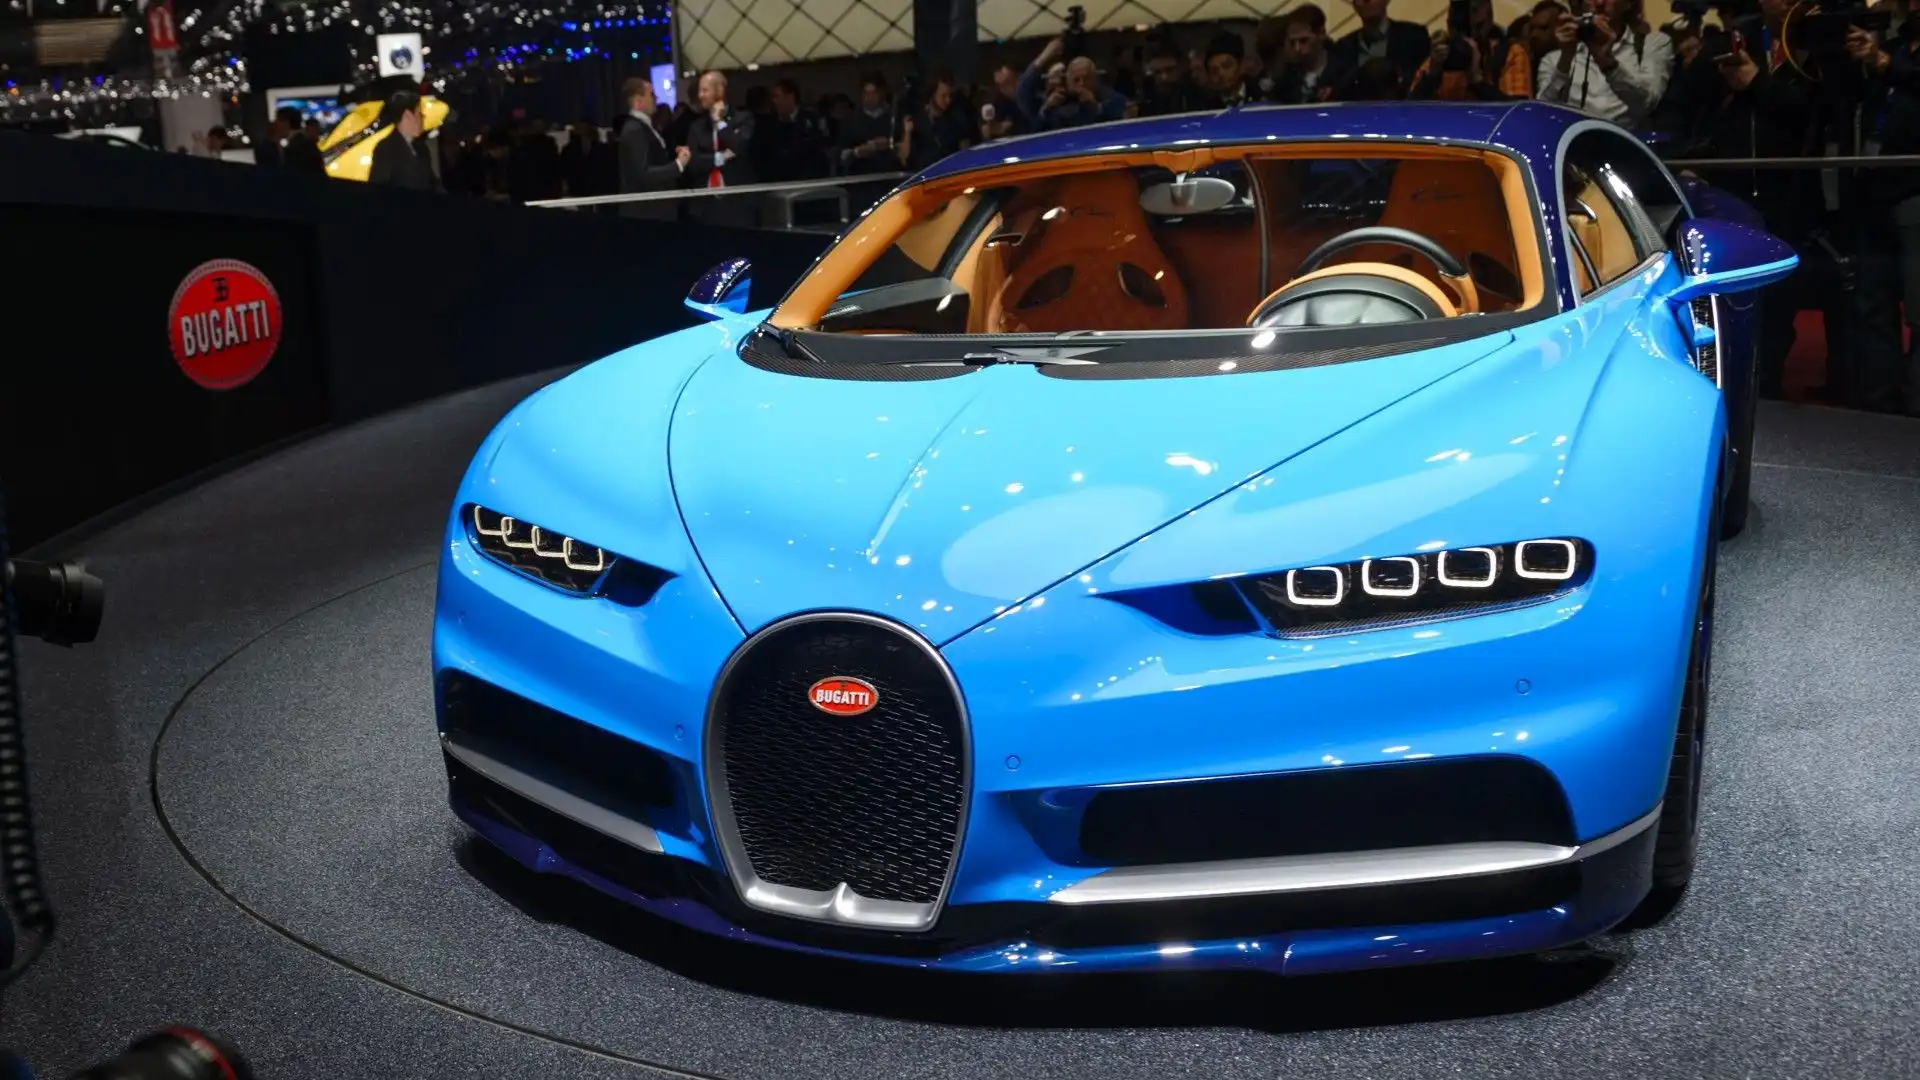 Ecco la Bugatti Veyron nella versione azzurra